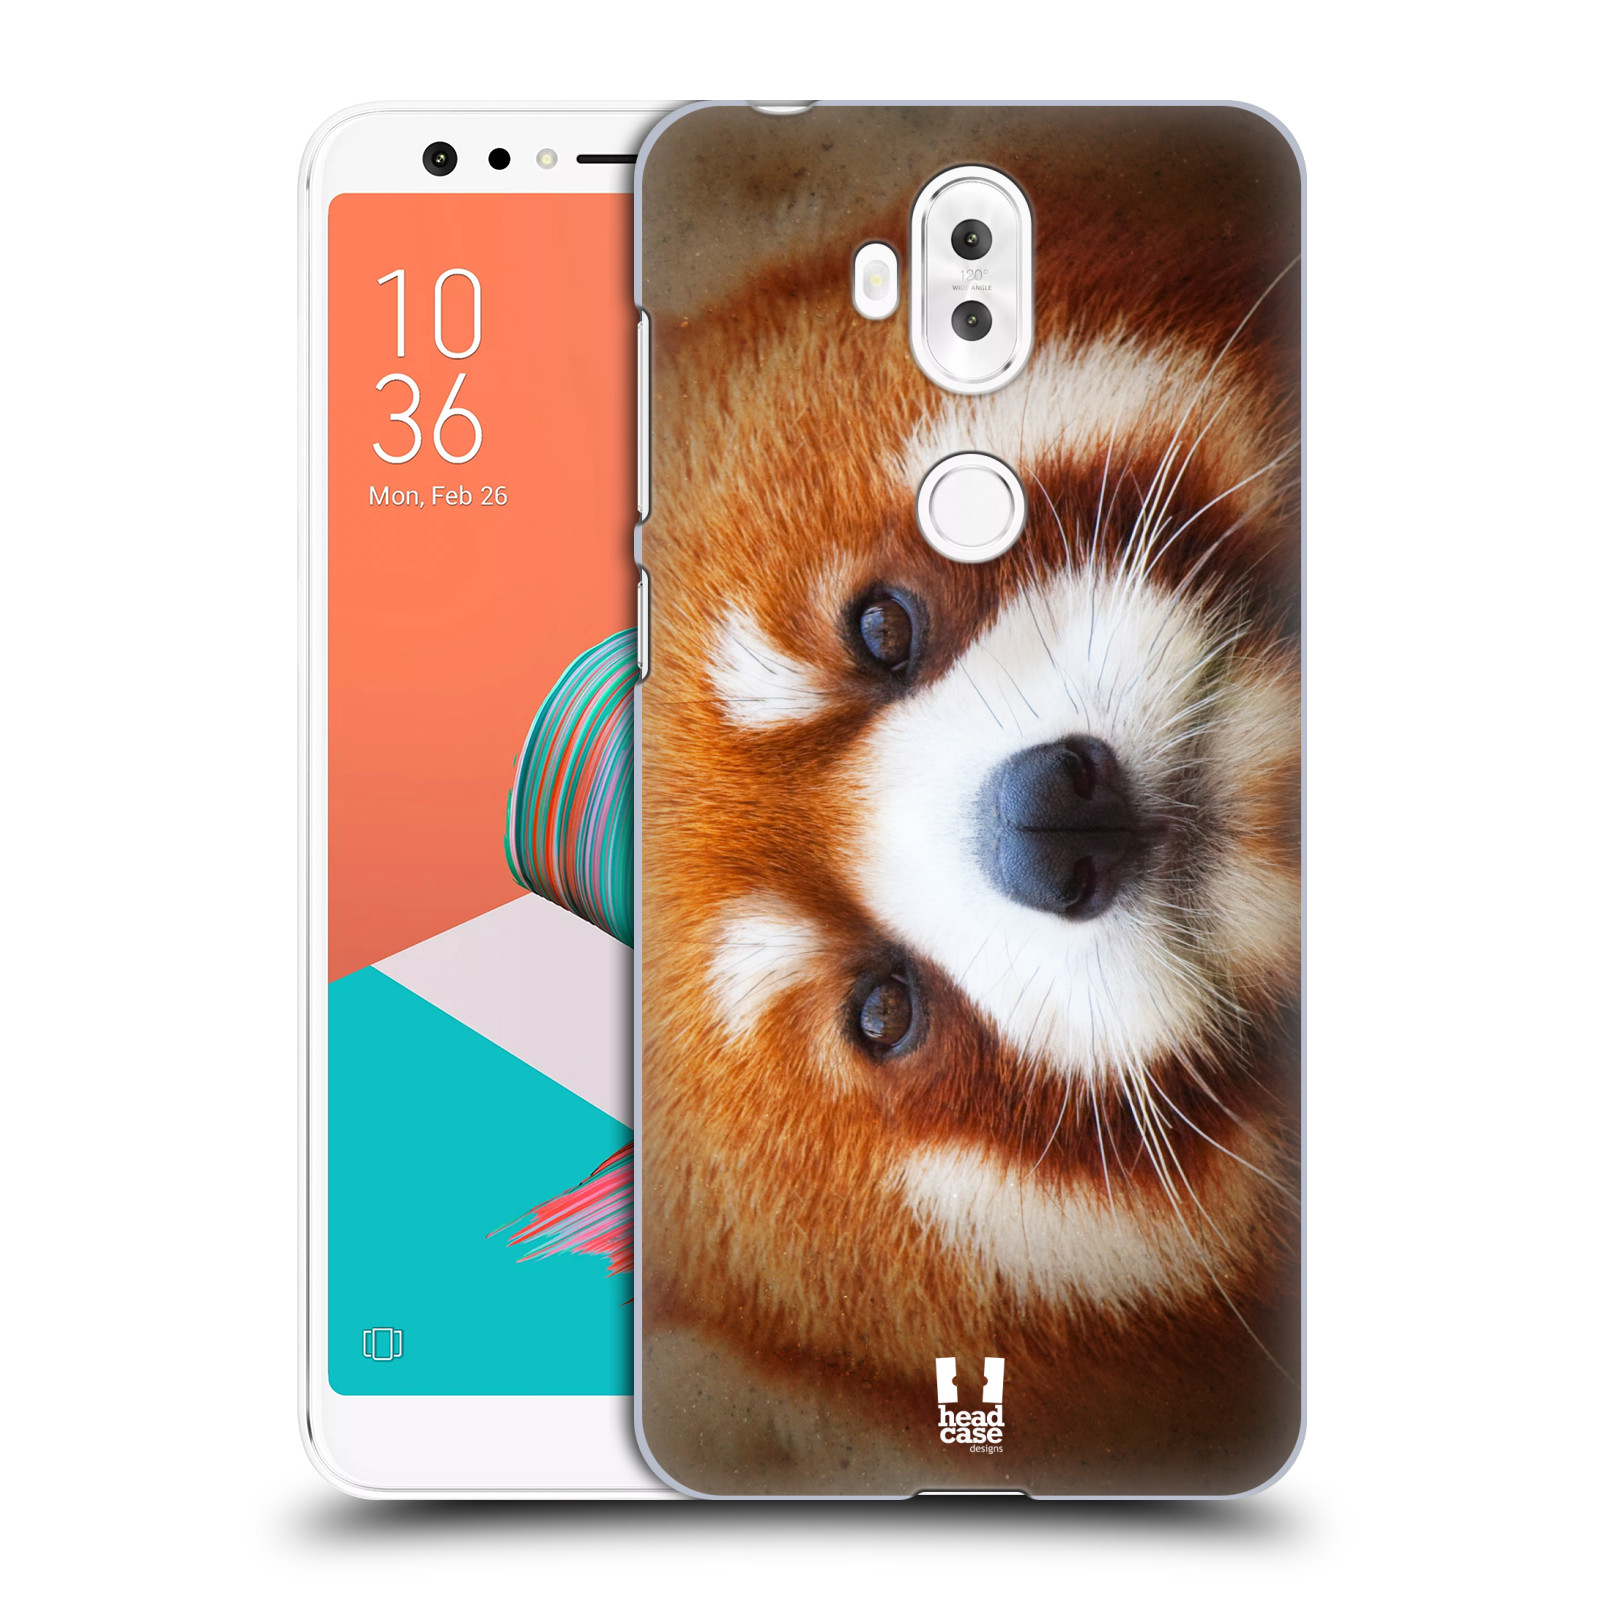 HEAD CASE plastový obal na mobil Asus Zenfone 5 LITE ZC600KL vzor Zvířecí tváře 2 medvěd panda rudá